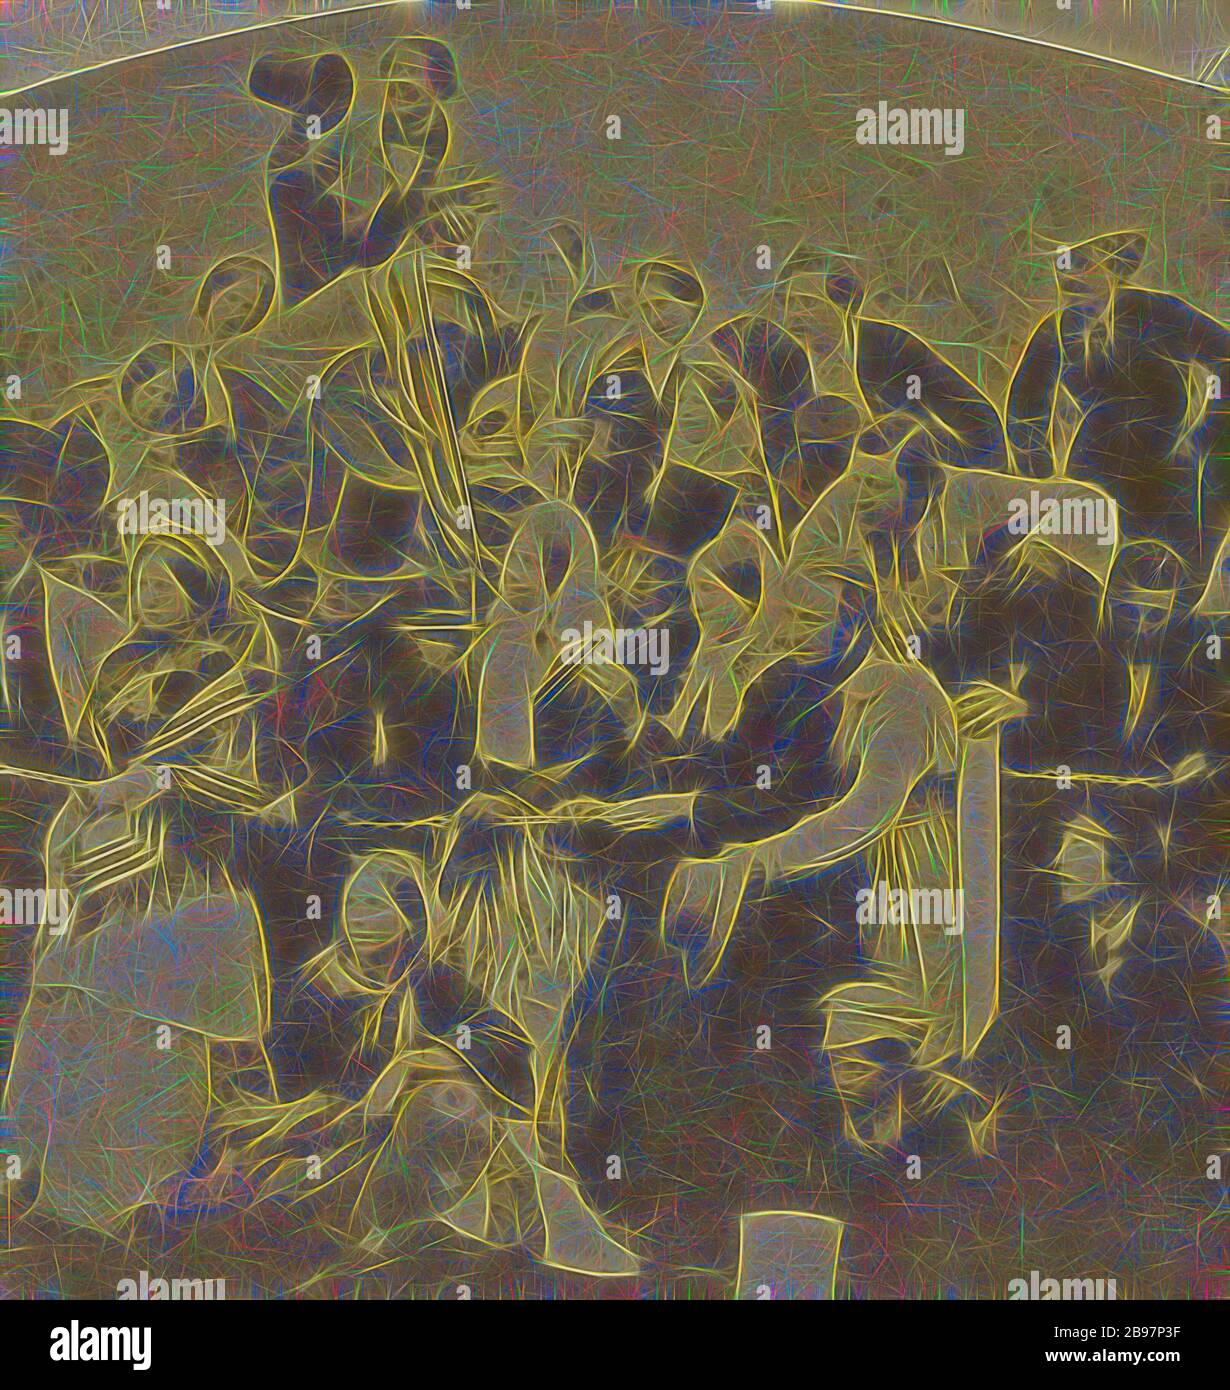 Untersuchung des großen Gemäldes "Derby Day" von William Powell Frith, Alfred Silvester (Britisch, aktive 1850er - 1860 Jahre), 1856, Albumen-Silberdruck, 6,6 × 6,3 cm (2 5/8 × 2 1/2 Zoll), von Gibon neu vorstellbar, Design von warmem, fröhlichem Leuchten von Helligkeit und Lichtstrahlen. Klassische Kunst mit moderner Note neu erfunden. Fotografie, inspiriert vom Futurismus, die dynamische Energie moderner Technologie, Bewegung, Geschwindigkeit und Kultur revolutionieren. Stockfoto